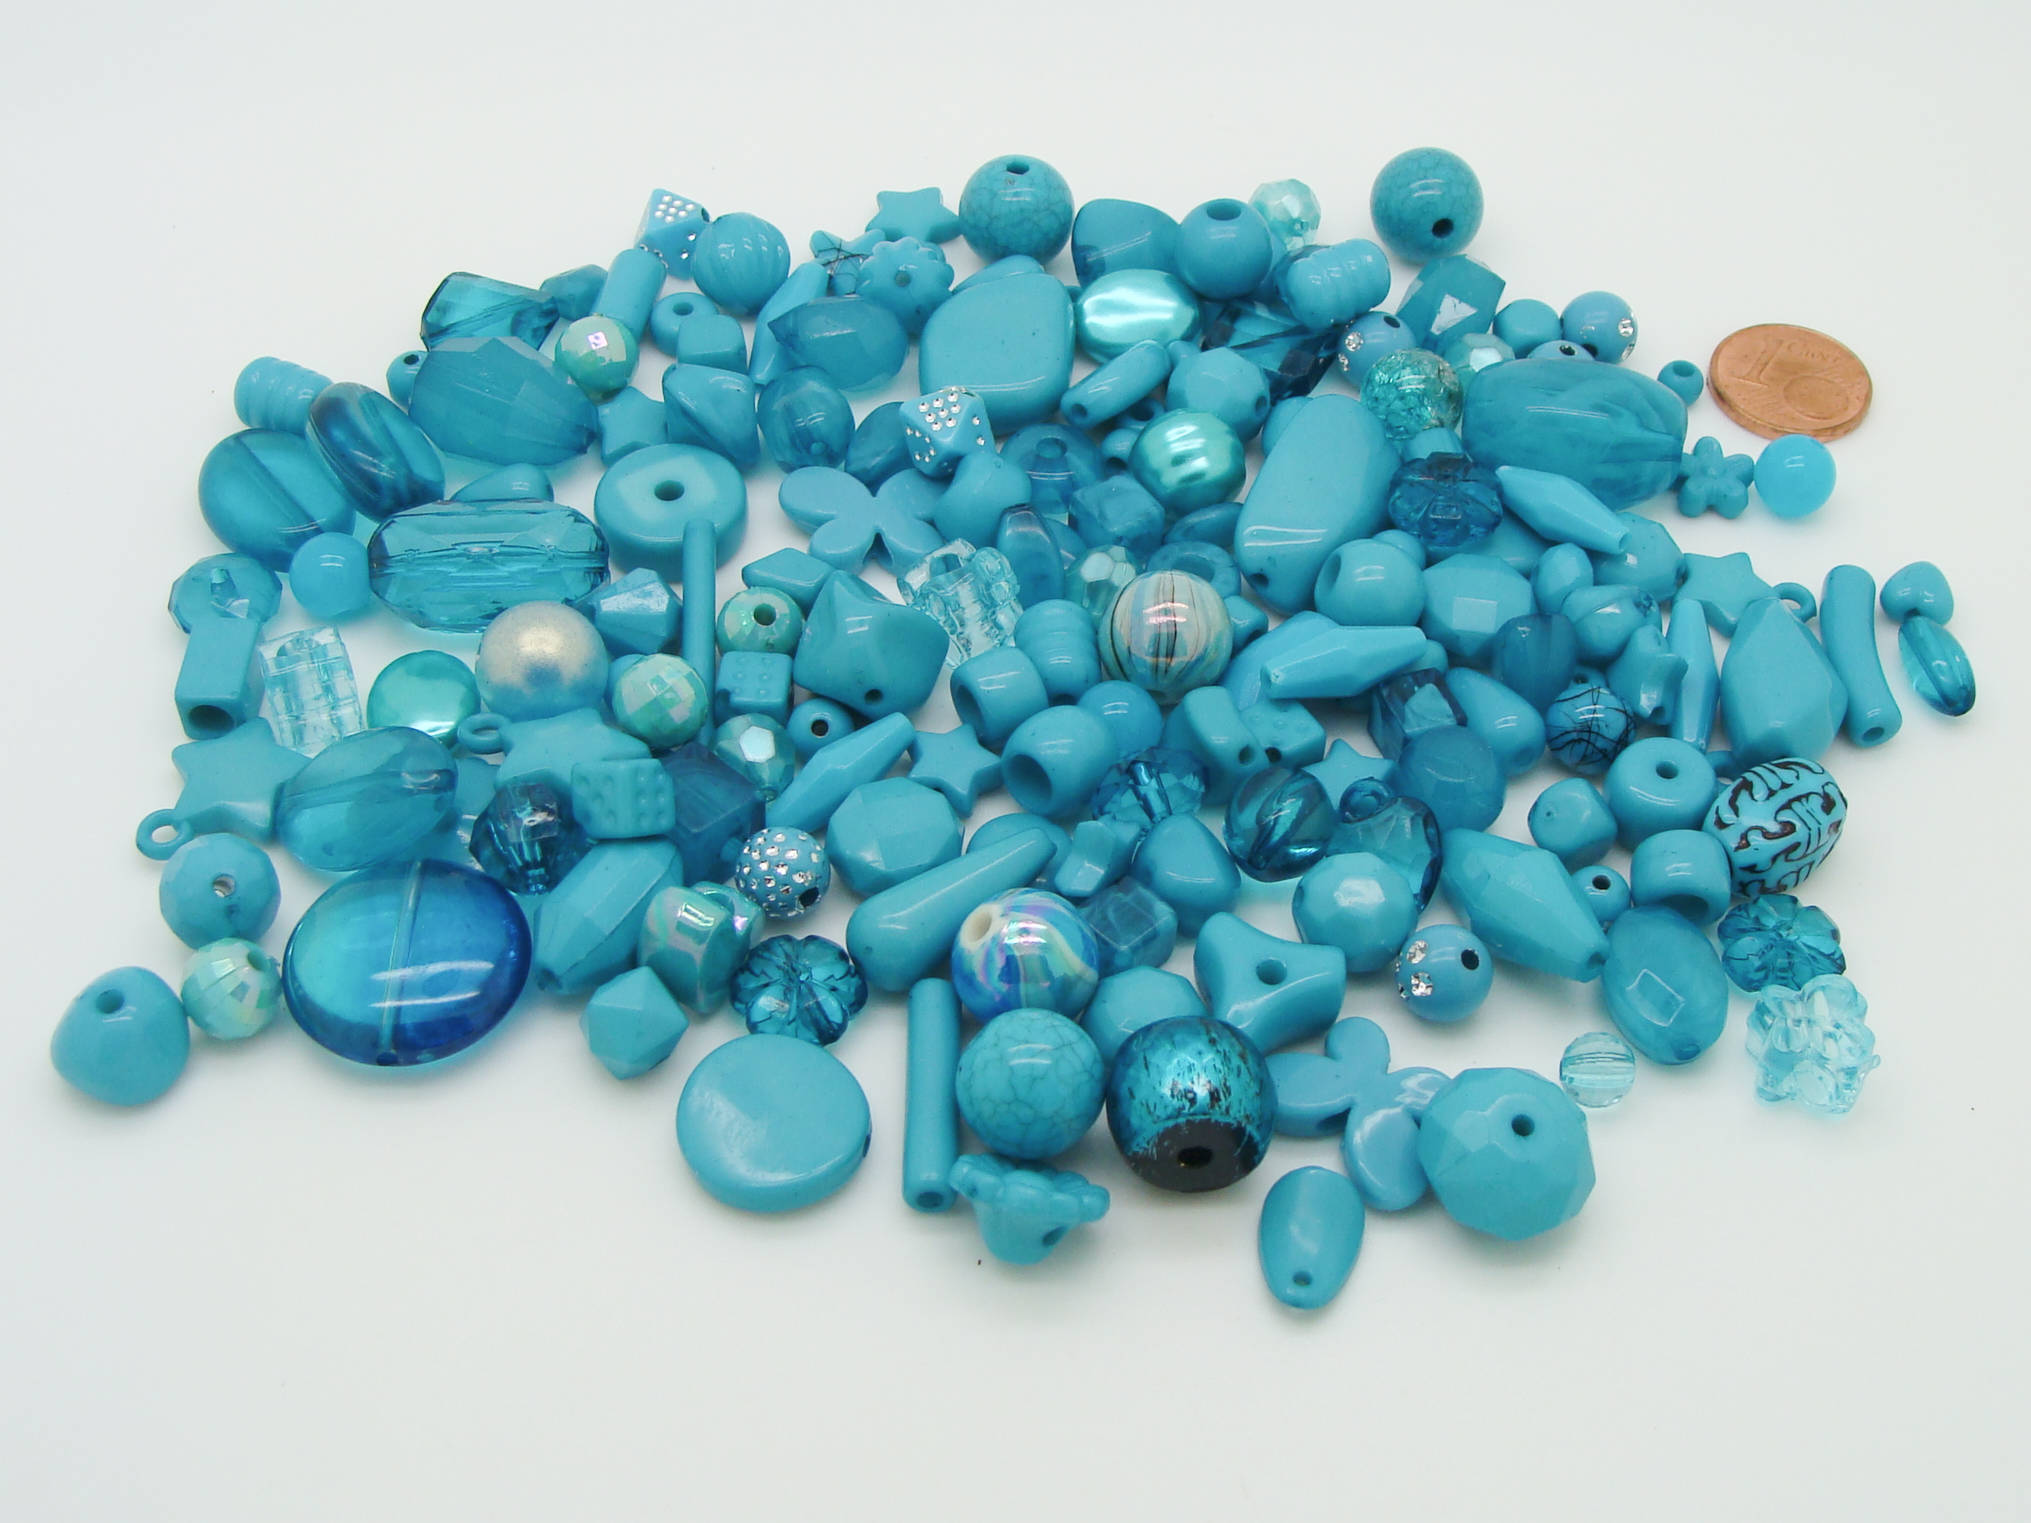 acry-75g-bleu perle bleue acrylique economique